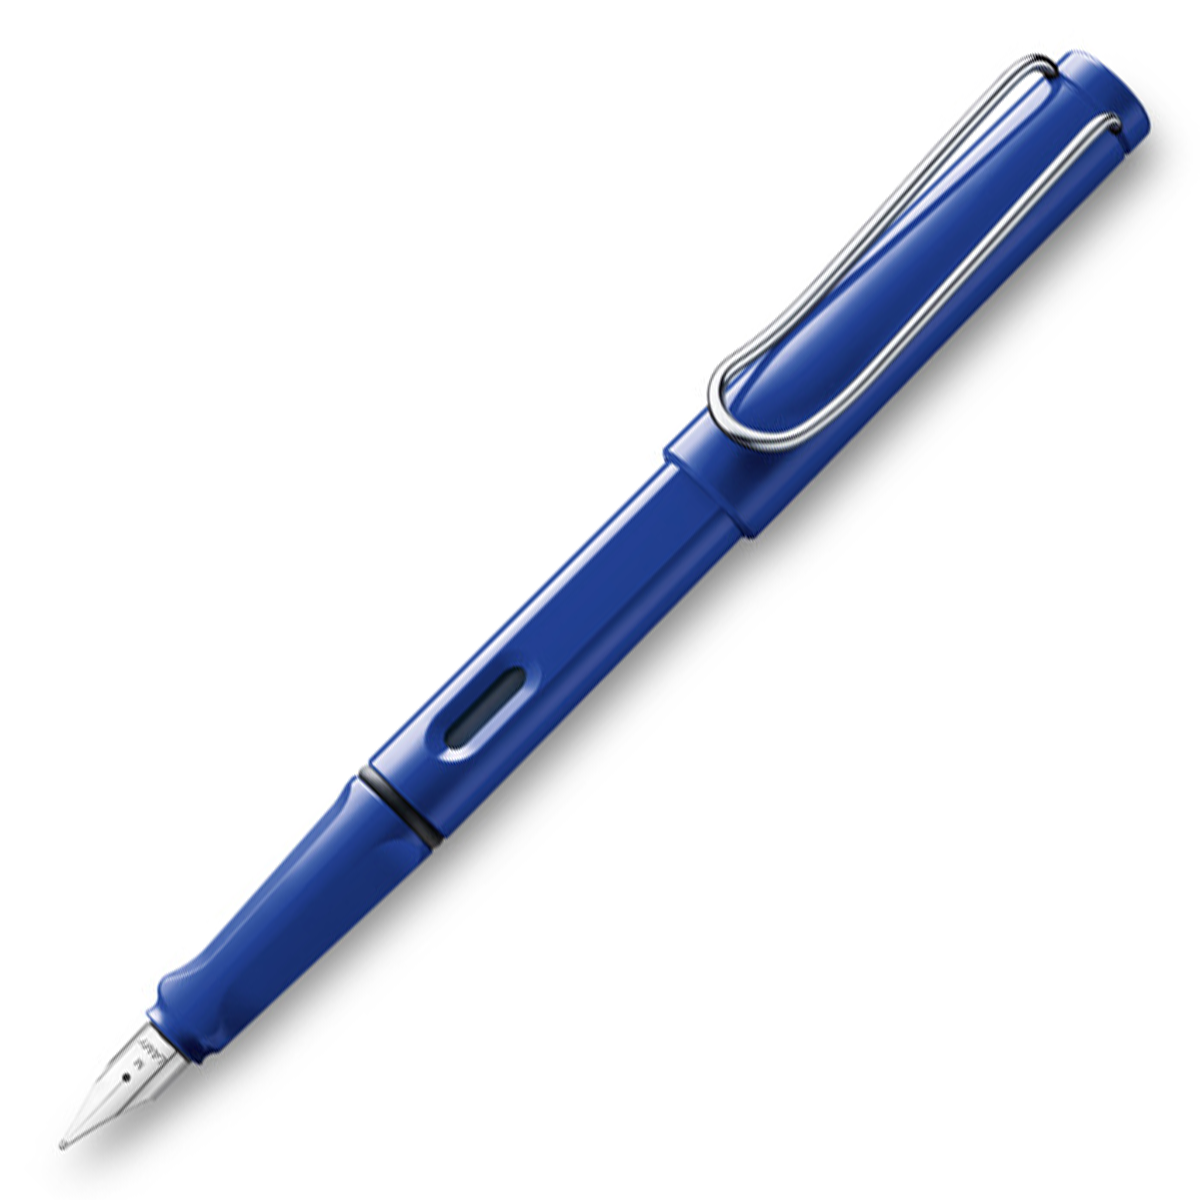 Safari Füllfederhalter Shiny Blue in der Gruppe Stifte / Fine Writing / Füllfederhalter bei Pen Store (101906_r)